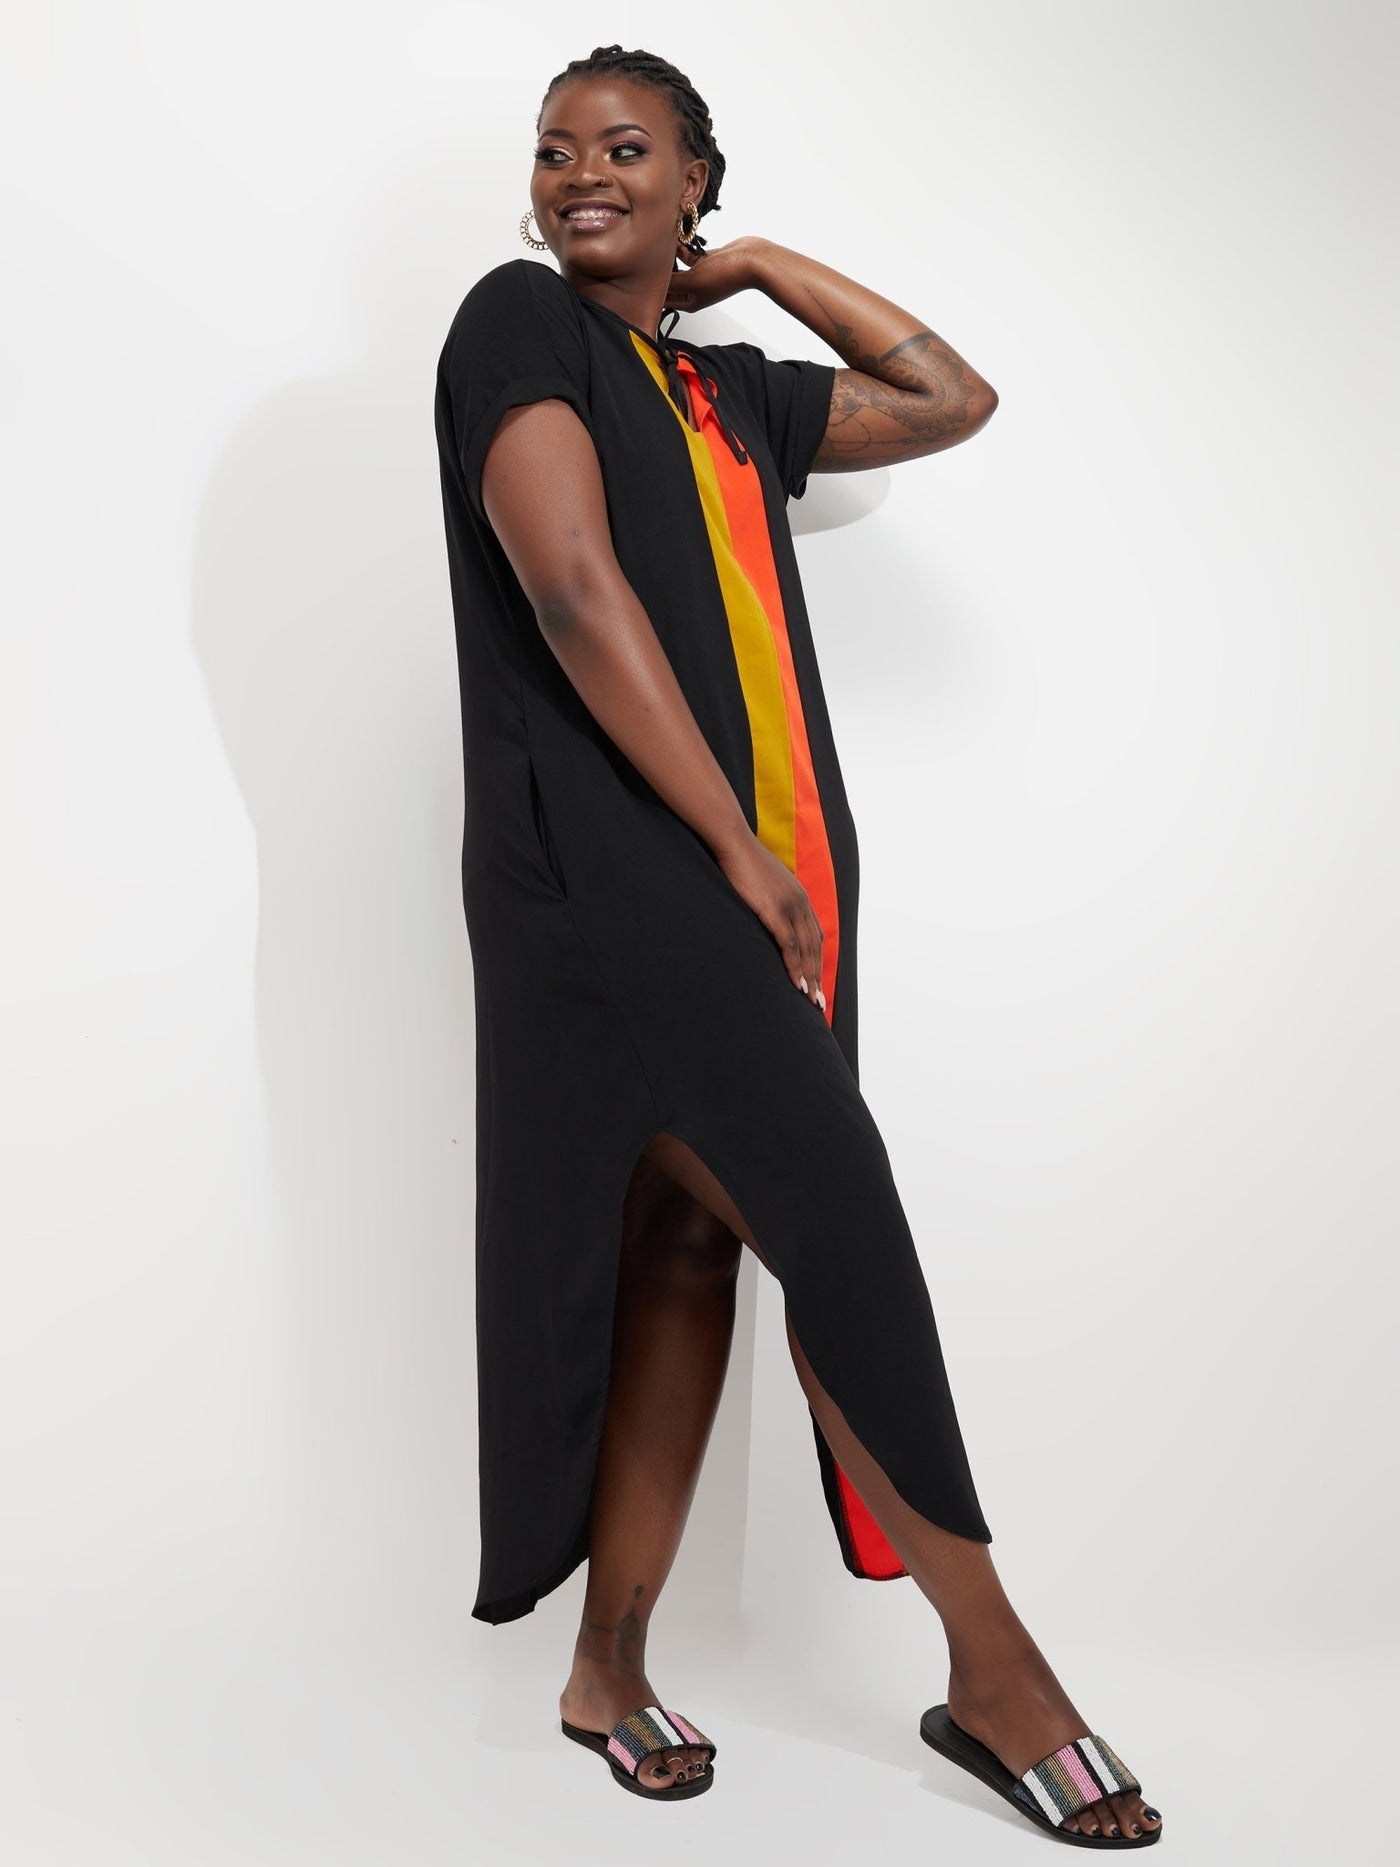 Salok Tanzi Maxi Dress - Black - Shop Zetu Kenya